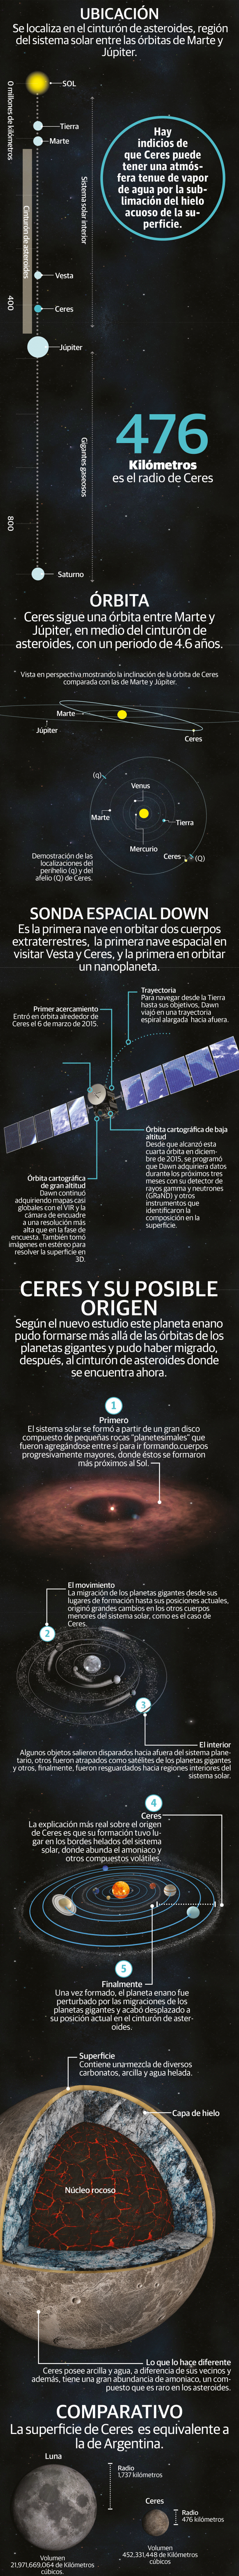 El misterioso origen del planeta Ceres: ¿una cápsula del tiempo?